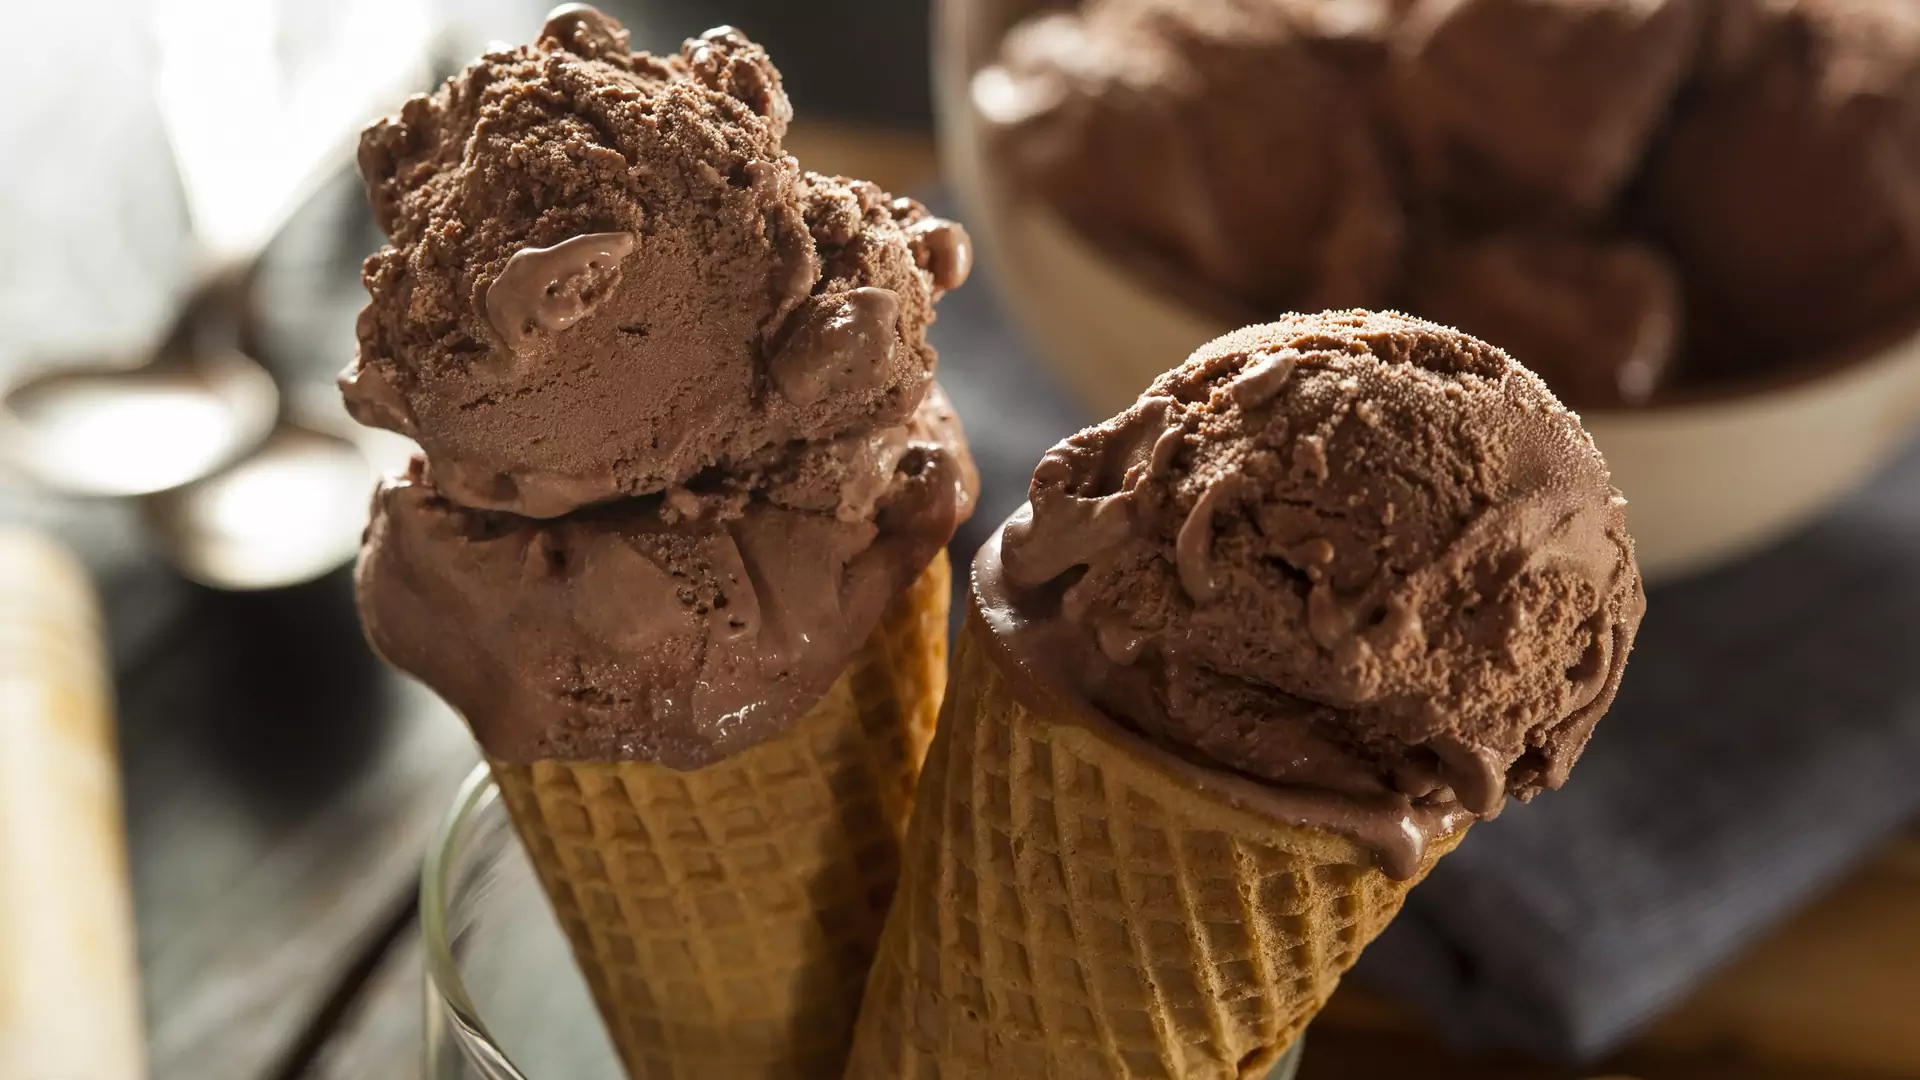 Kiedy zobaczysz, co kryje się w lodach czekoladowych, dwa razy zastanowisz się, zanim je zjesz